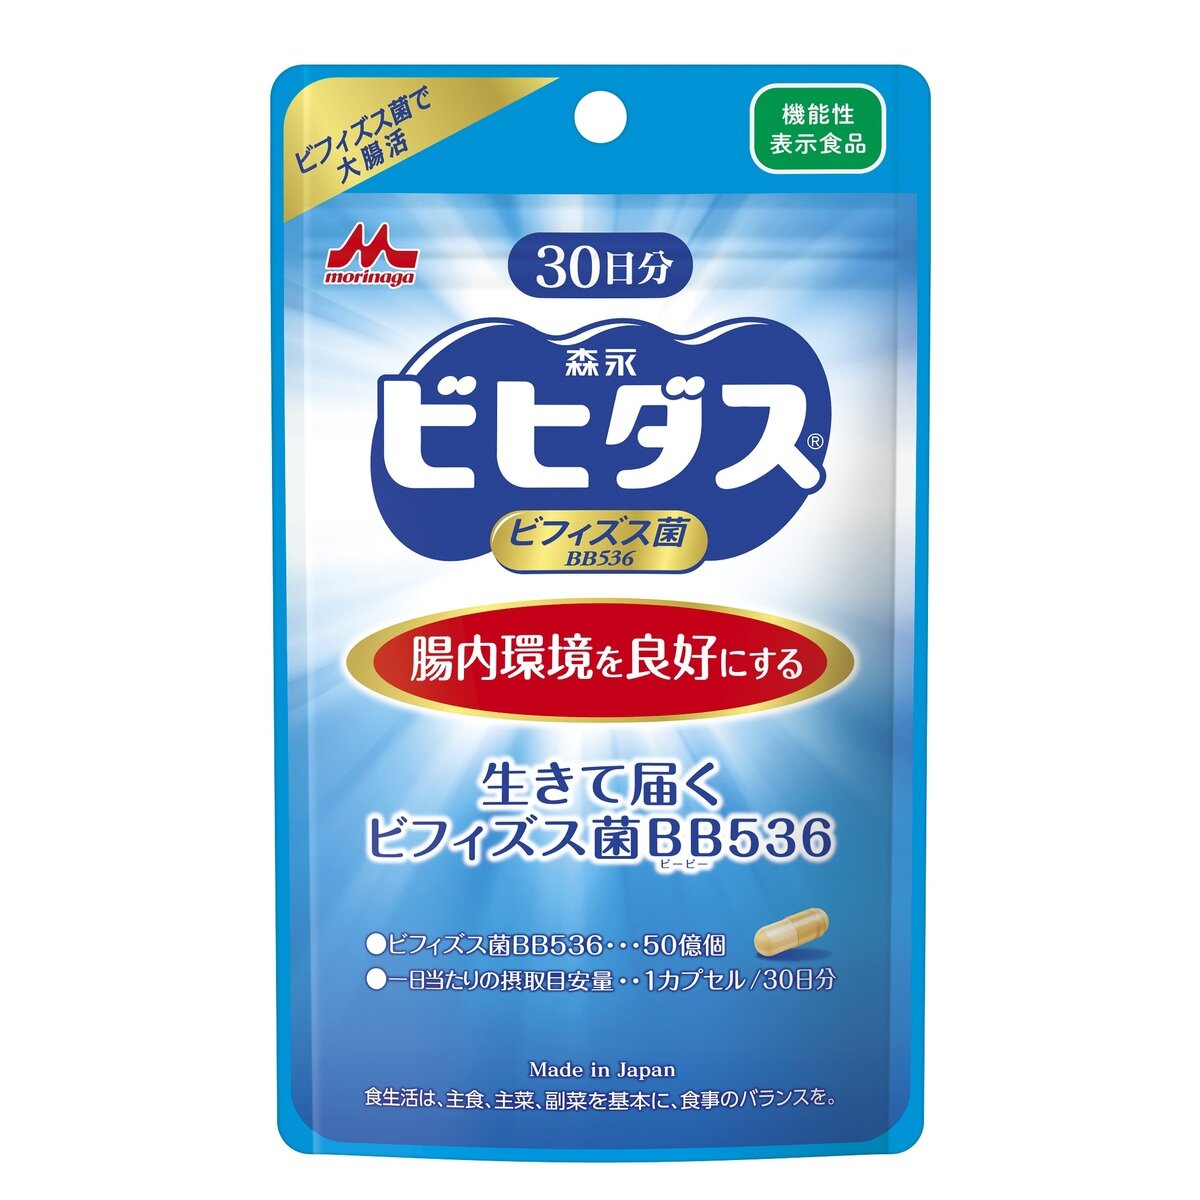 カラメル 健康サプリ 森永乳業 ビヒダス BB536（ビフィズス菌入り）3：ごくごくミルク > ビヒダス